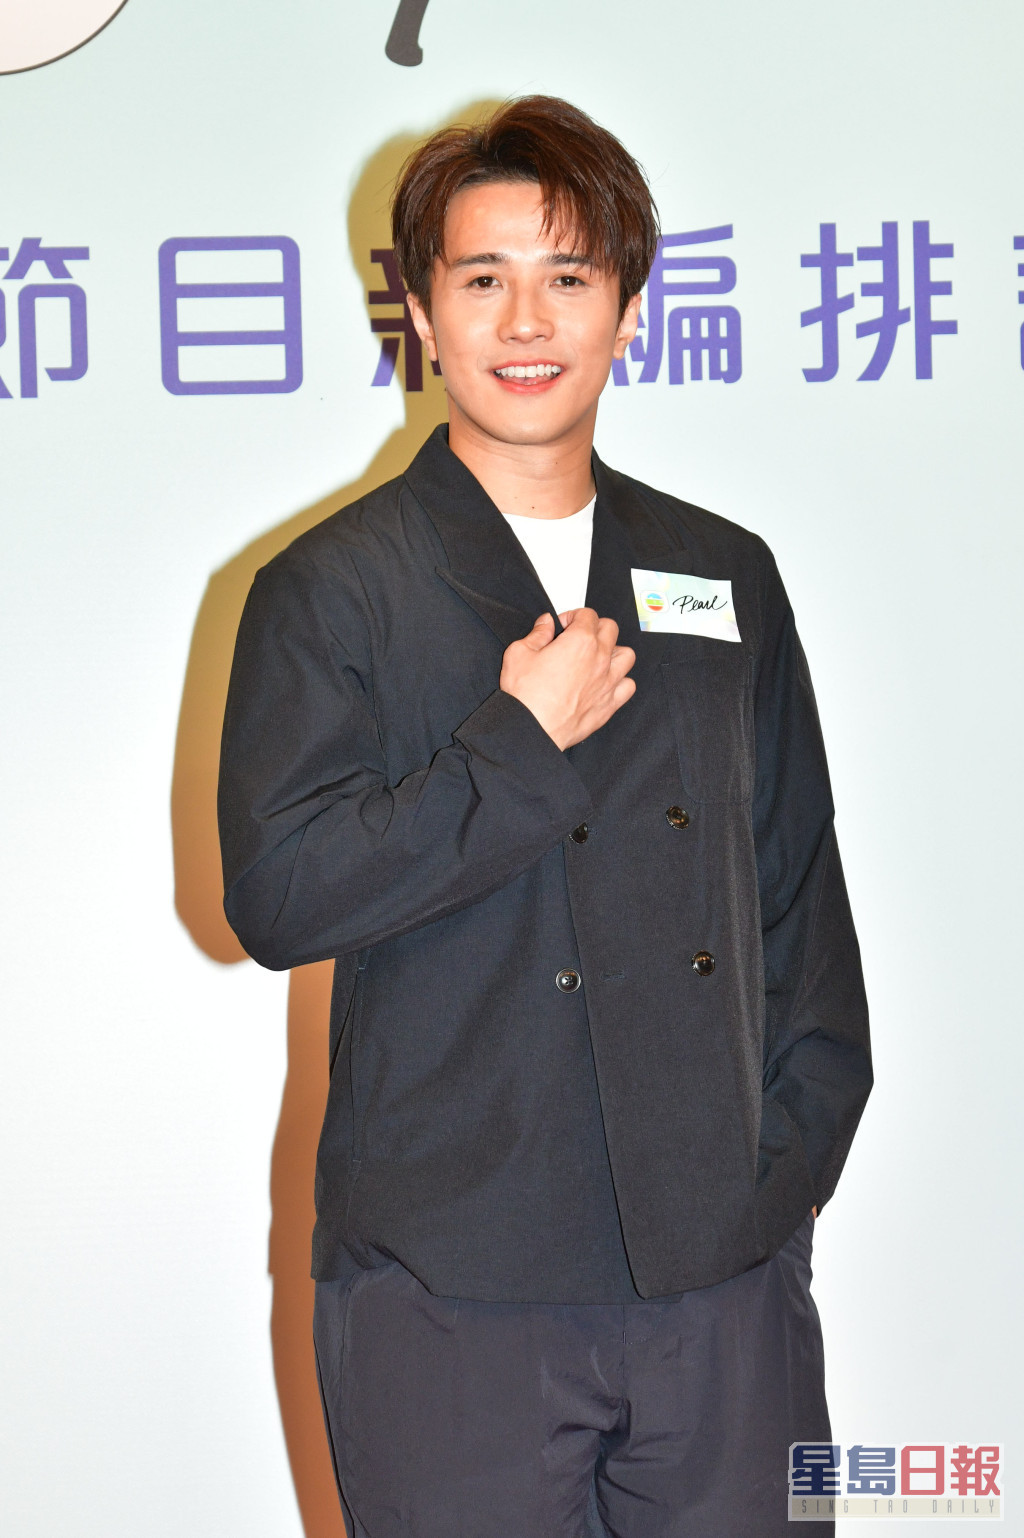 黃庭鋒被TVB高層點名力捧，他表示看到報道後感到受寵若驚。